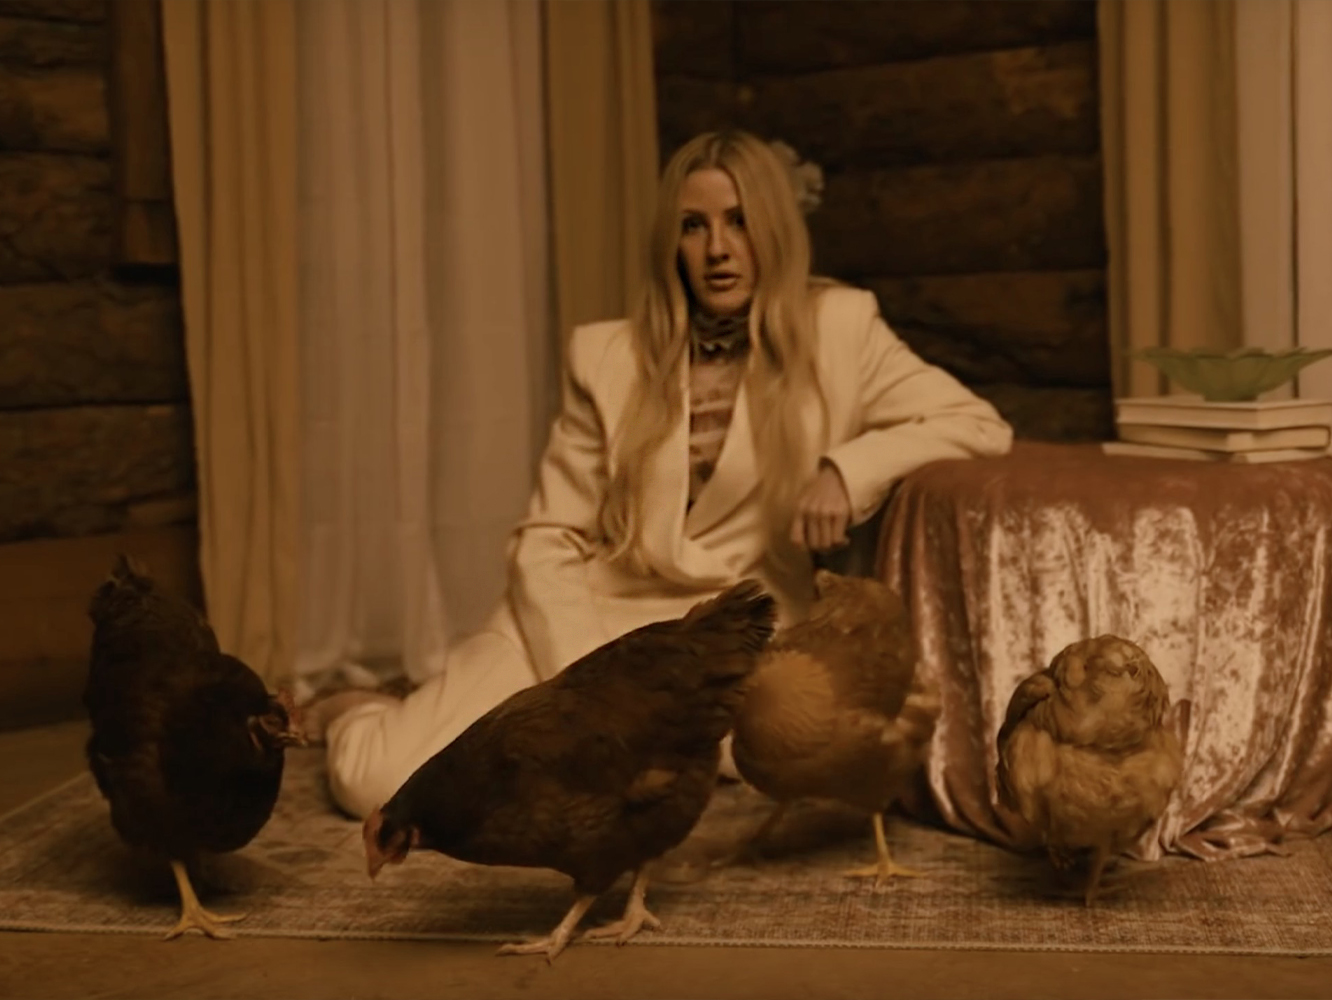  Lo que queda de Ellie Goulding se desangra en el vídeo para ‘Worry About Me’